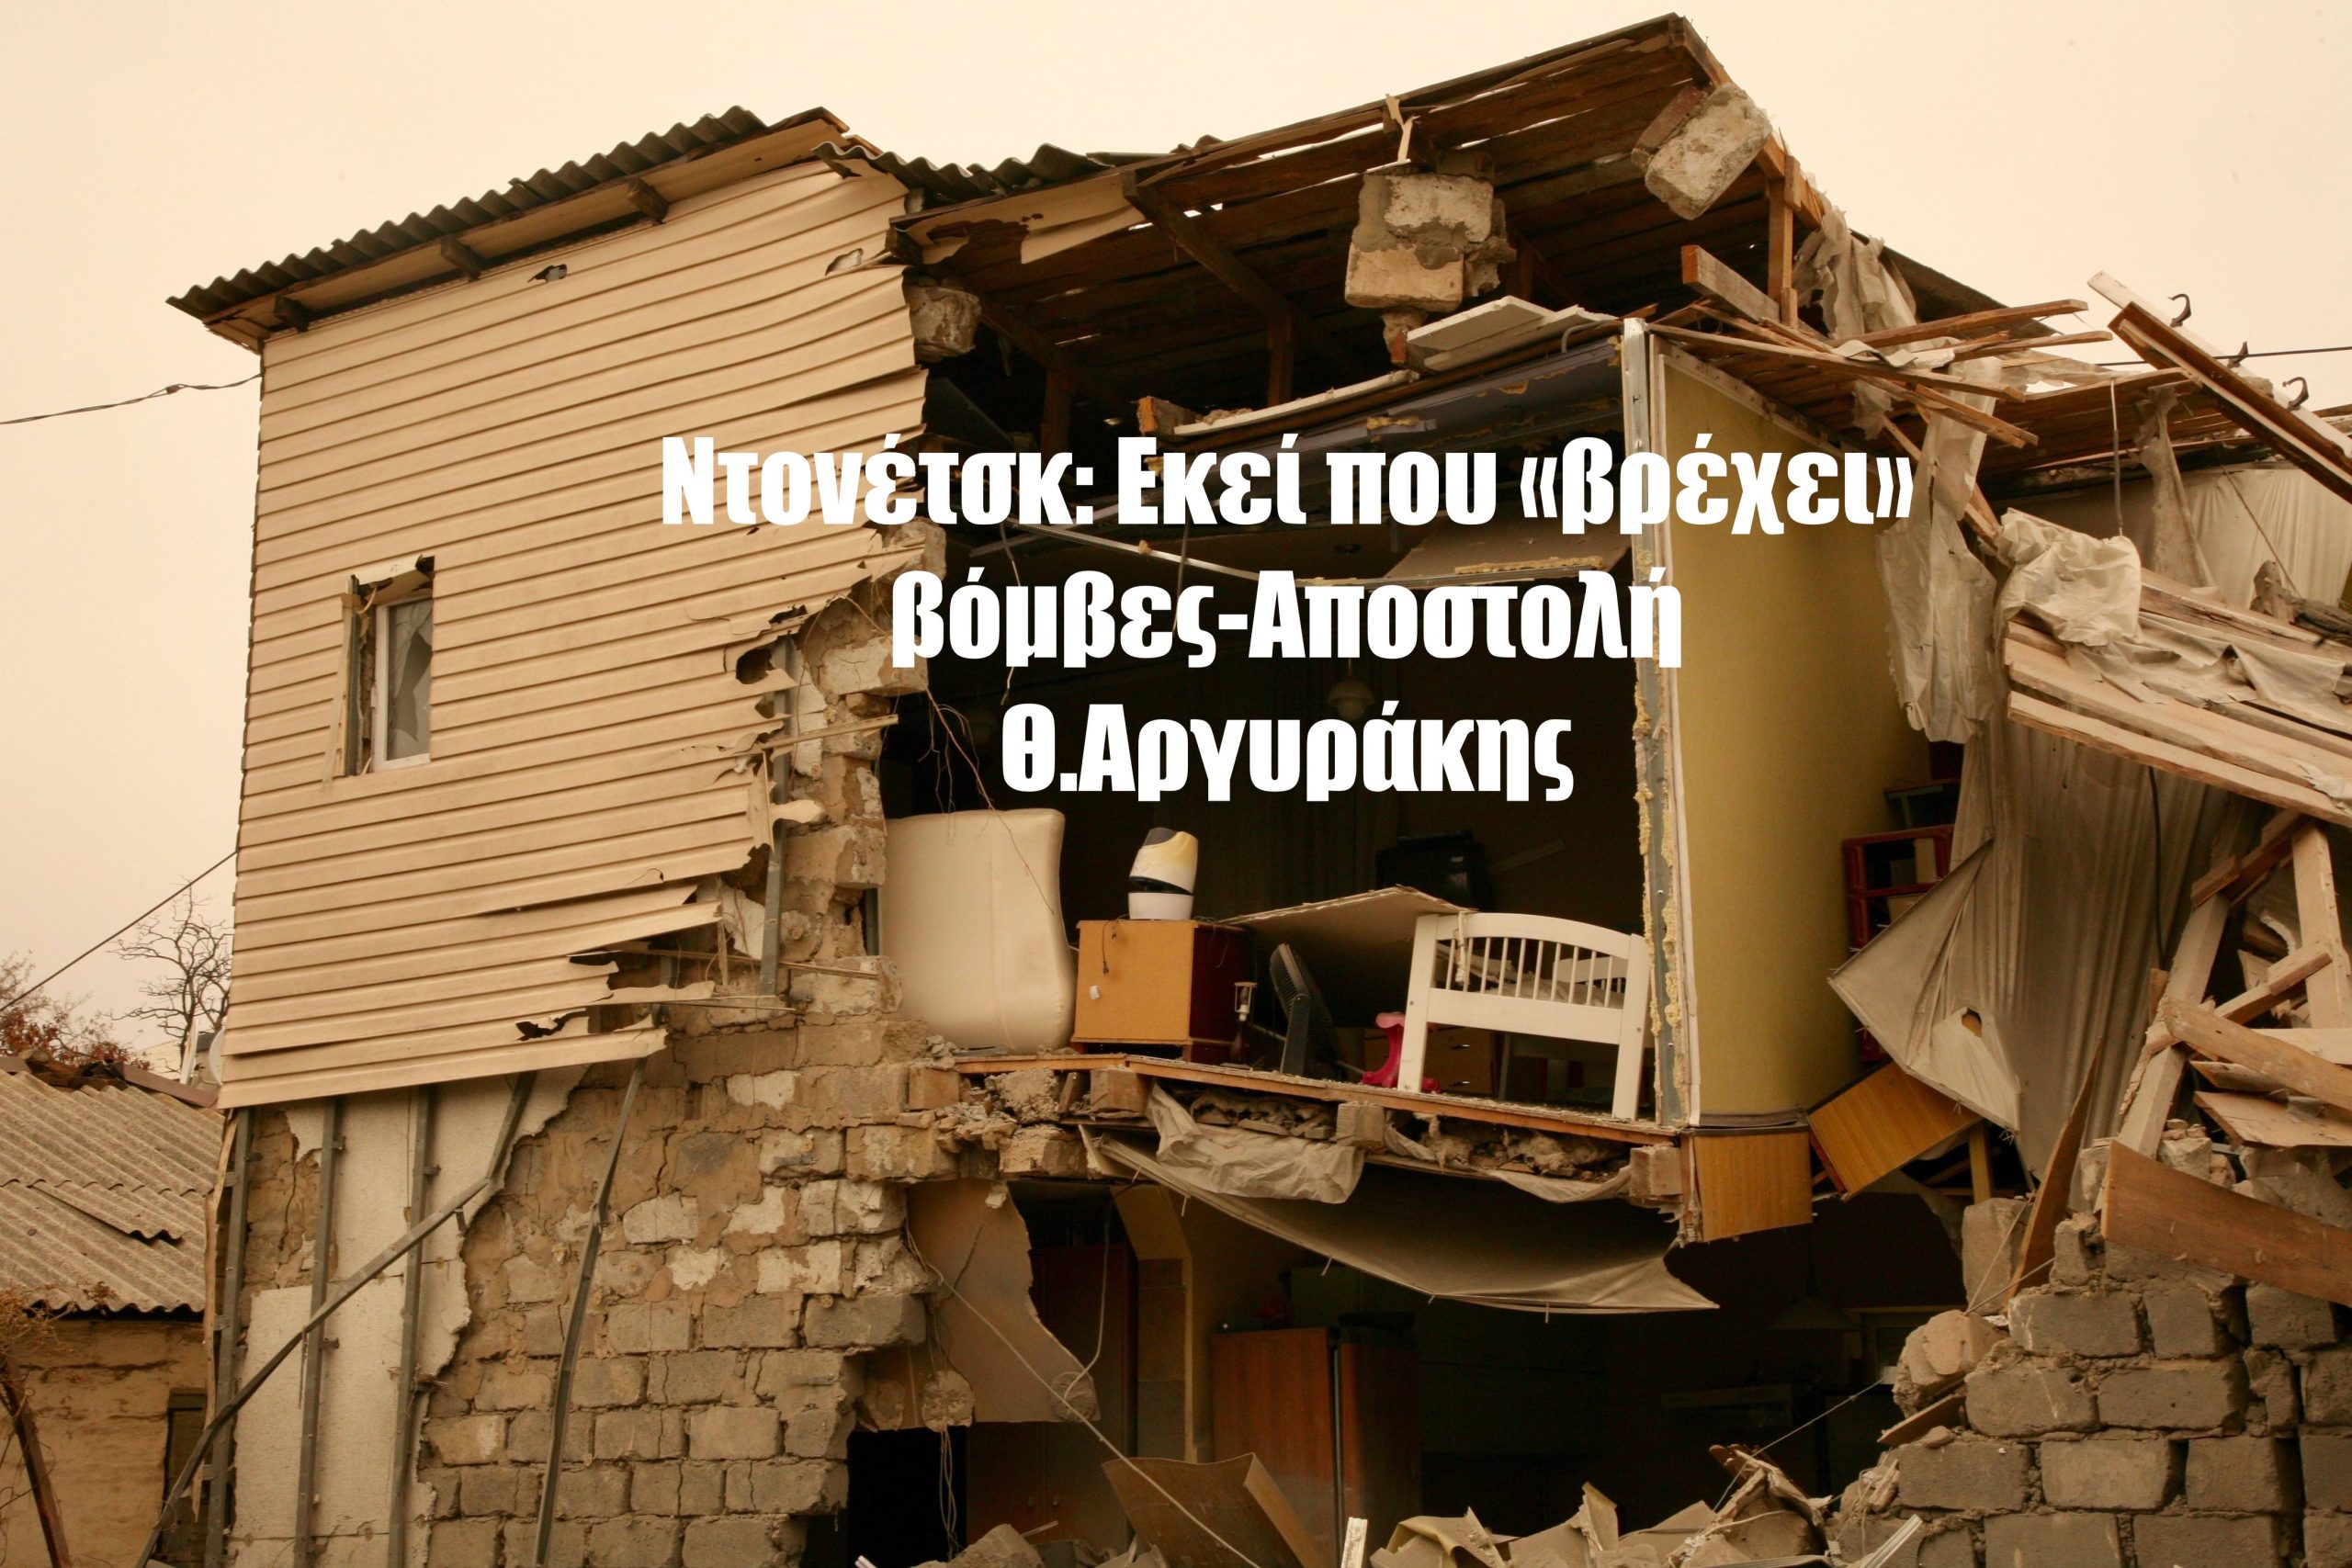 Αποστολή στην Ανατολική Ουκρανία: Στο Ντονέτσκ ... βρέχει βόμβες-Θ.Αργυράκης